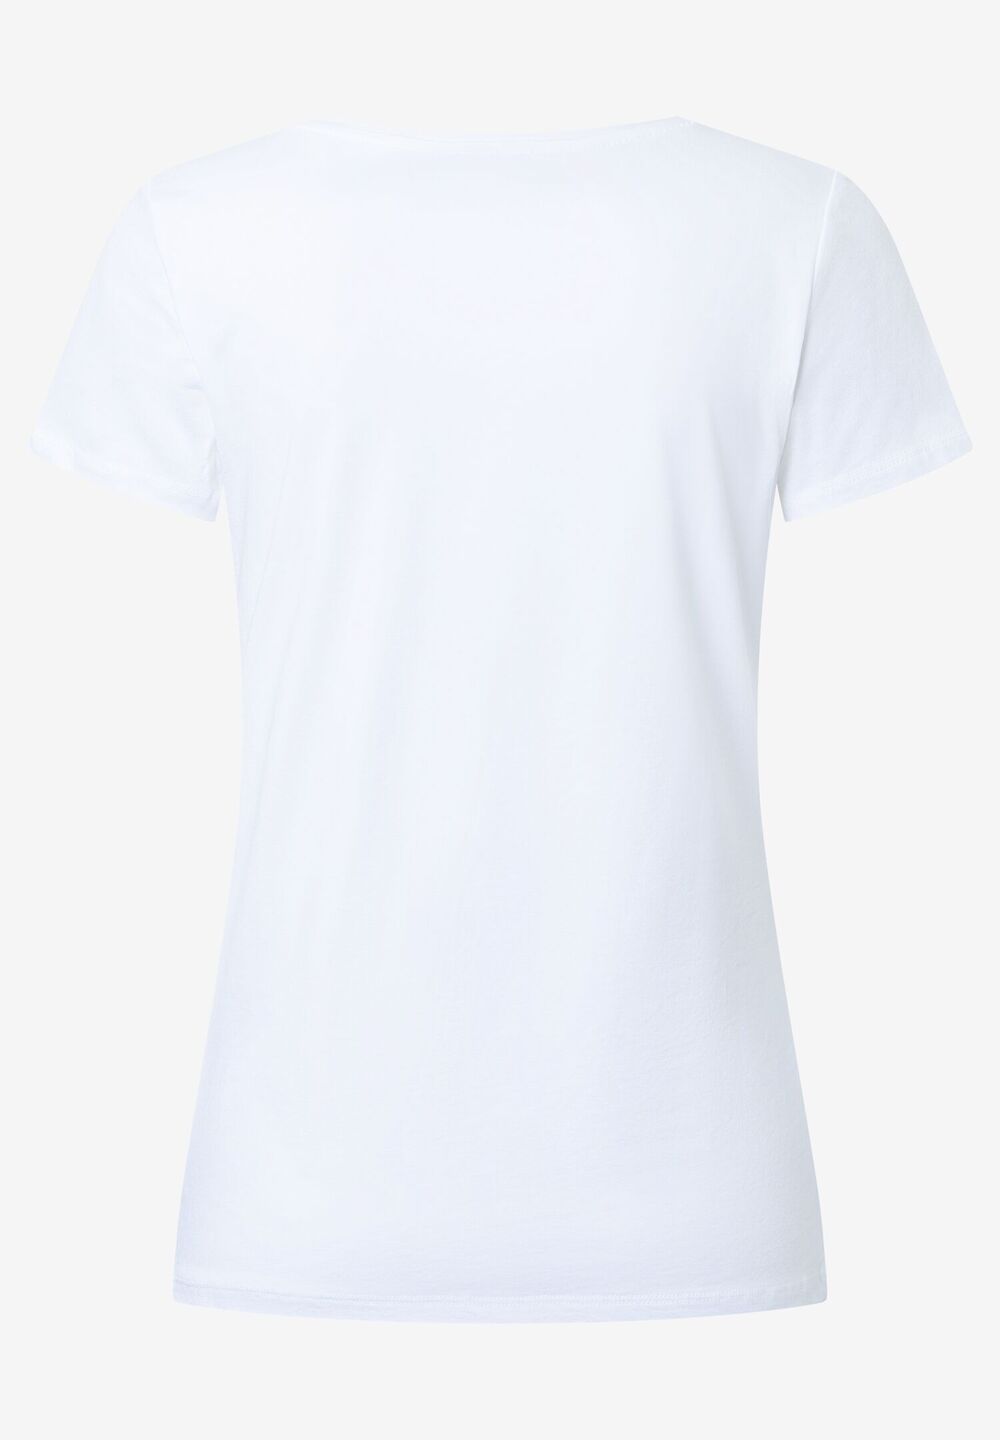 T-Shirt, weiß, Blätter-Motiv, Sommer-Kollektion, weiss Rückansicht